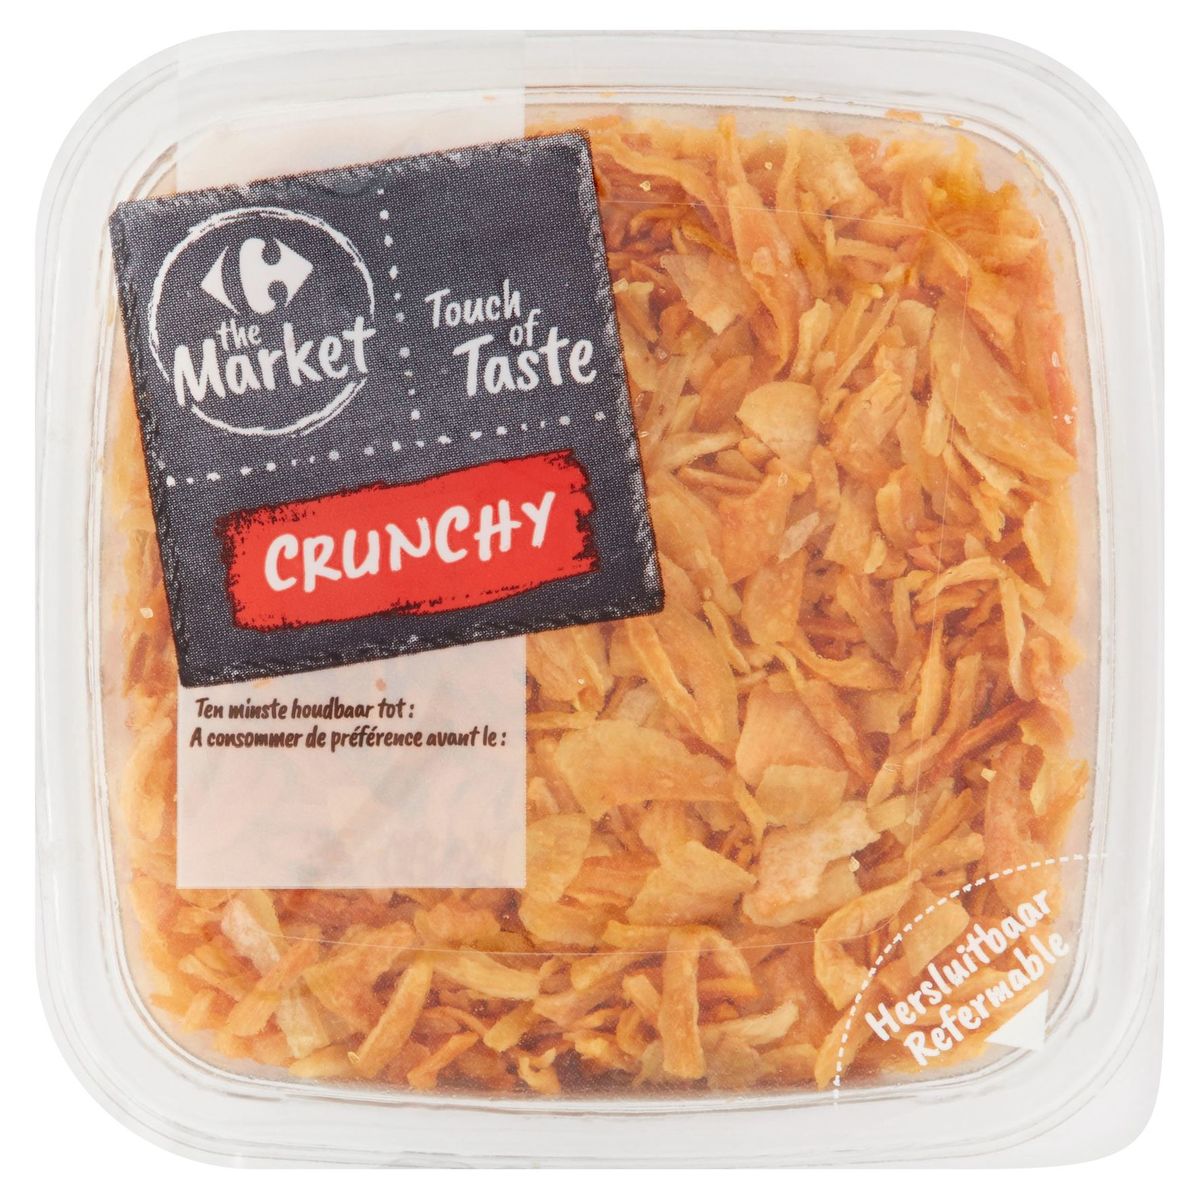 Carrefour The Market Touch of Taste Crunchy Gebakken Uien 100 g